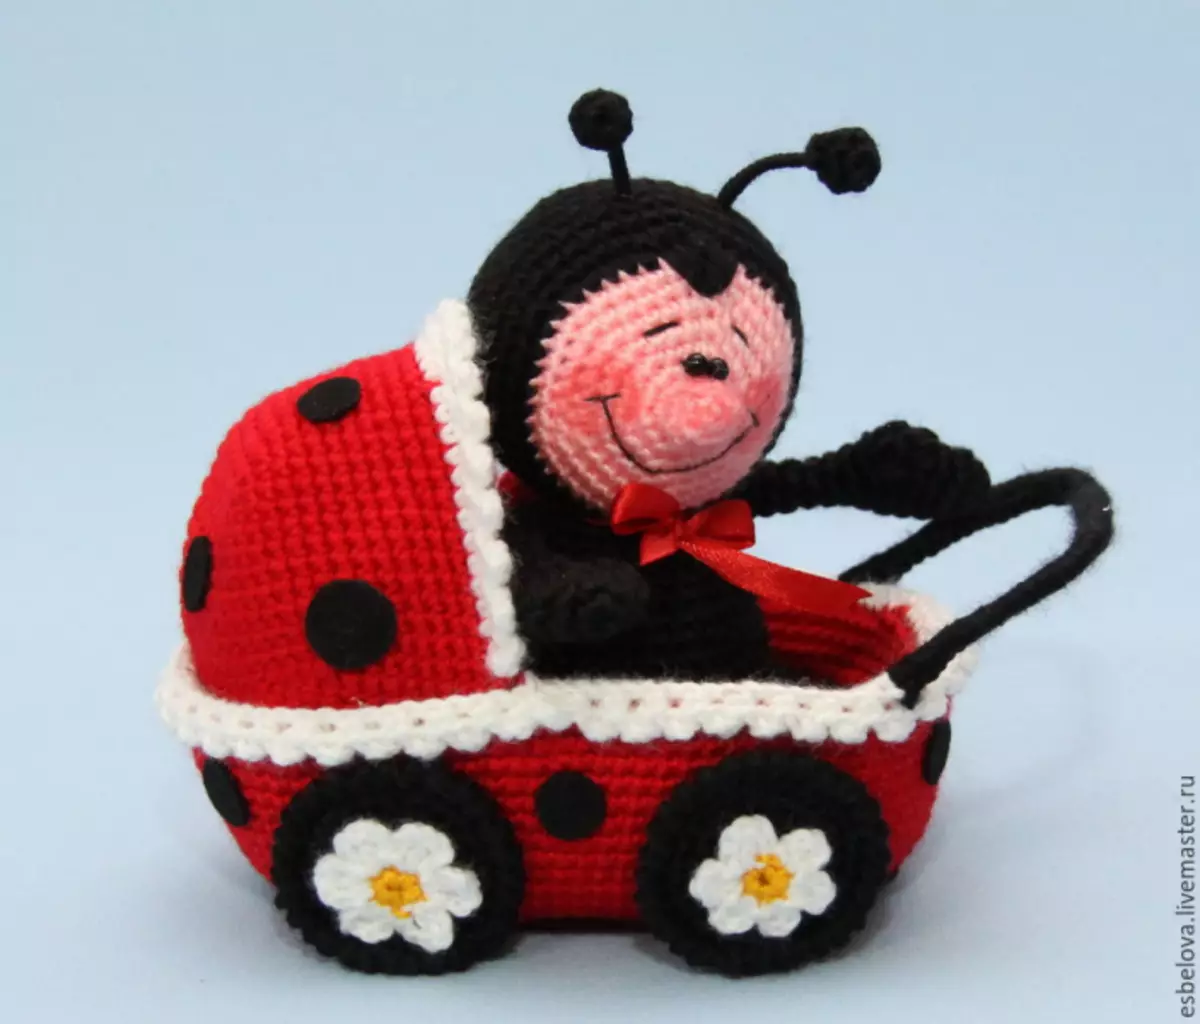 Ladybug crochet: makirci tare da bayanin tsari da bidiyo